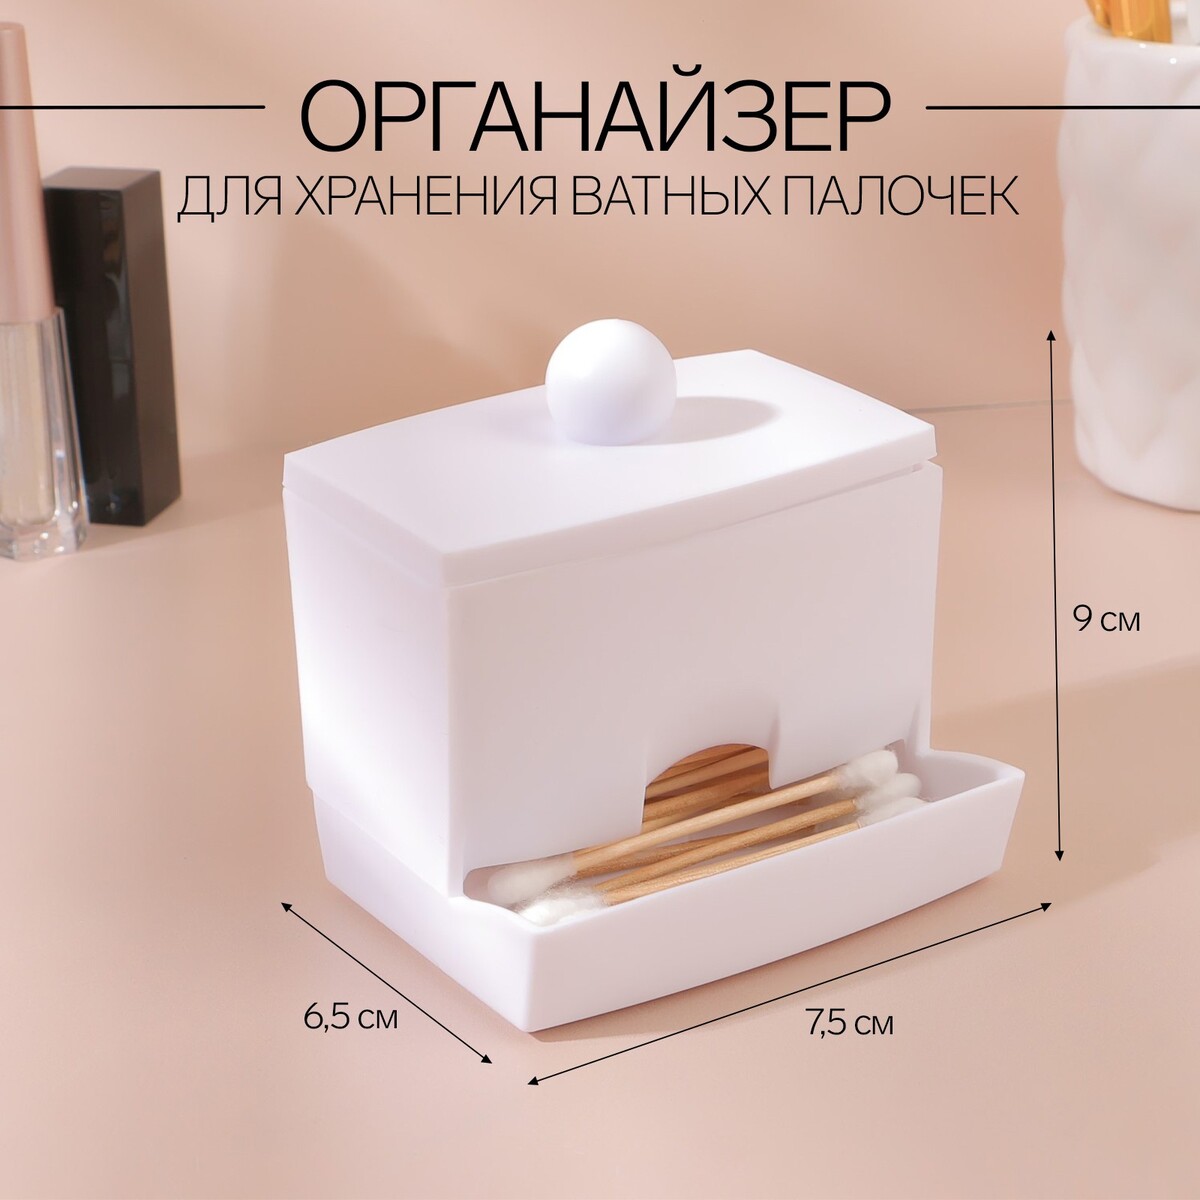 Органайзер для хранения ватных палочек, с крышкой, 9 × 6,5 × 7,5 см, цвет белый органайзер для хранения ватных палочек